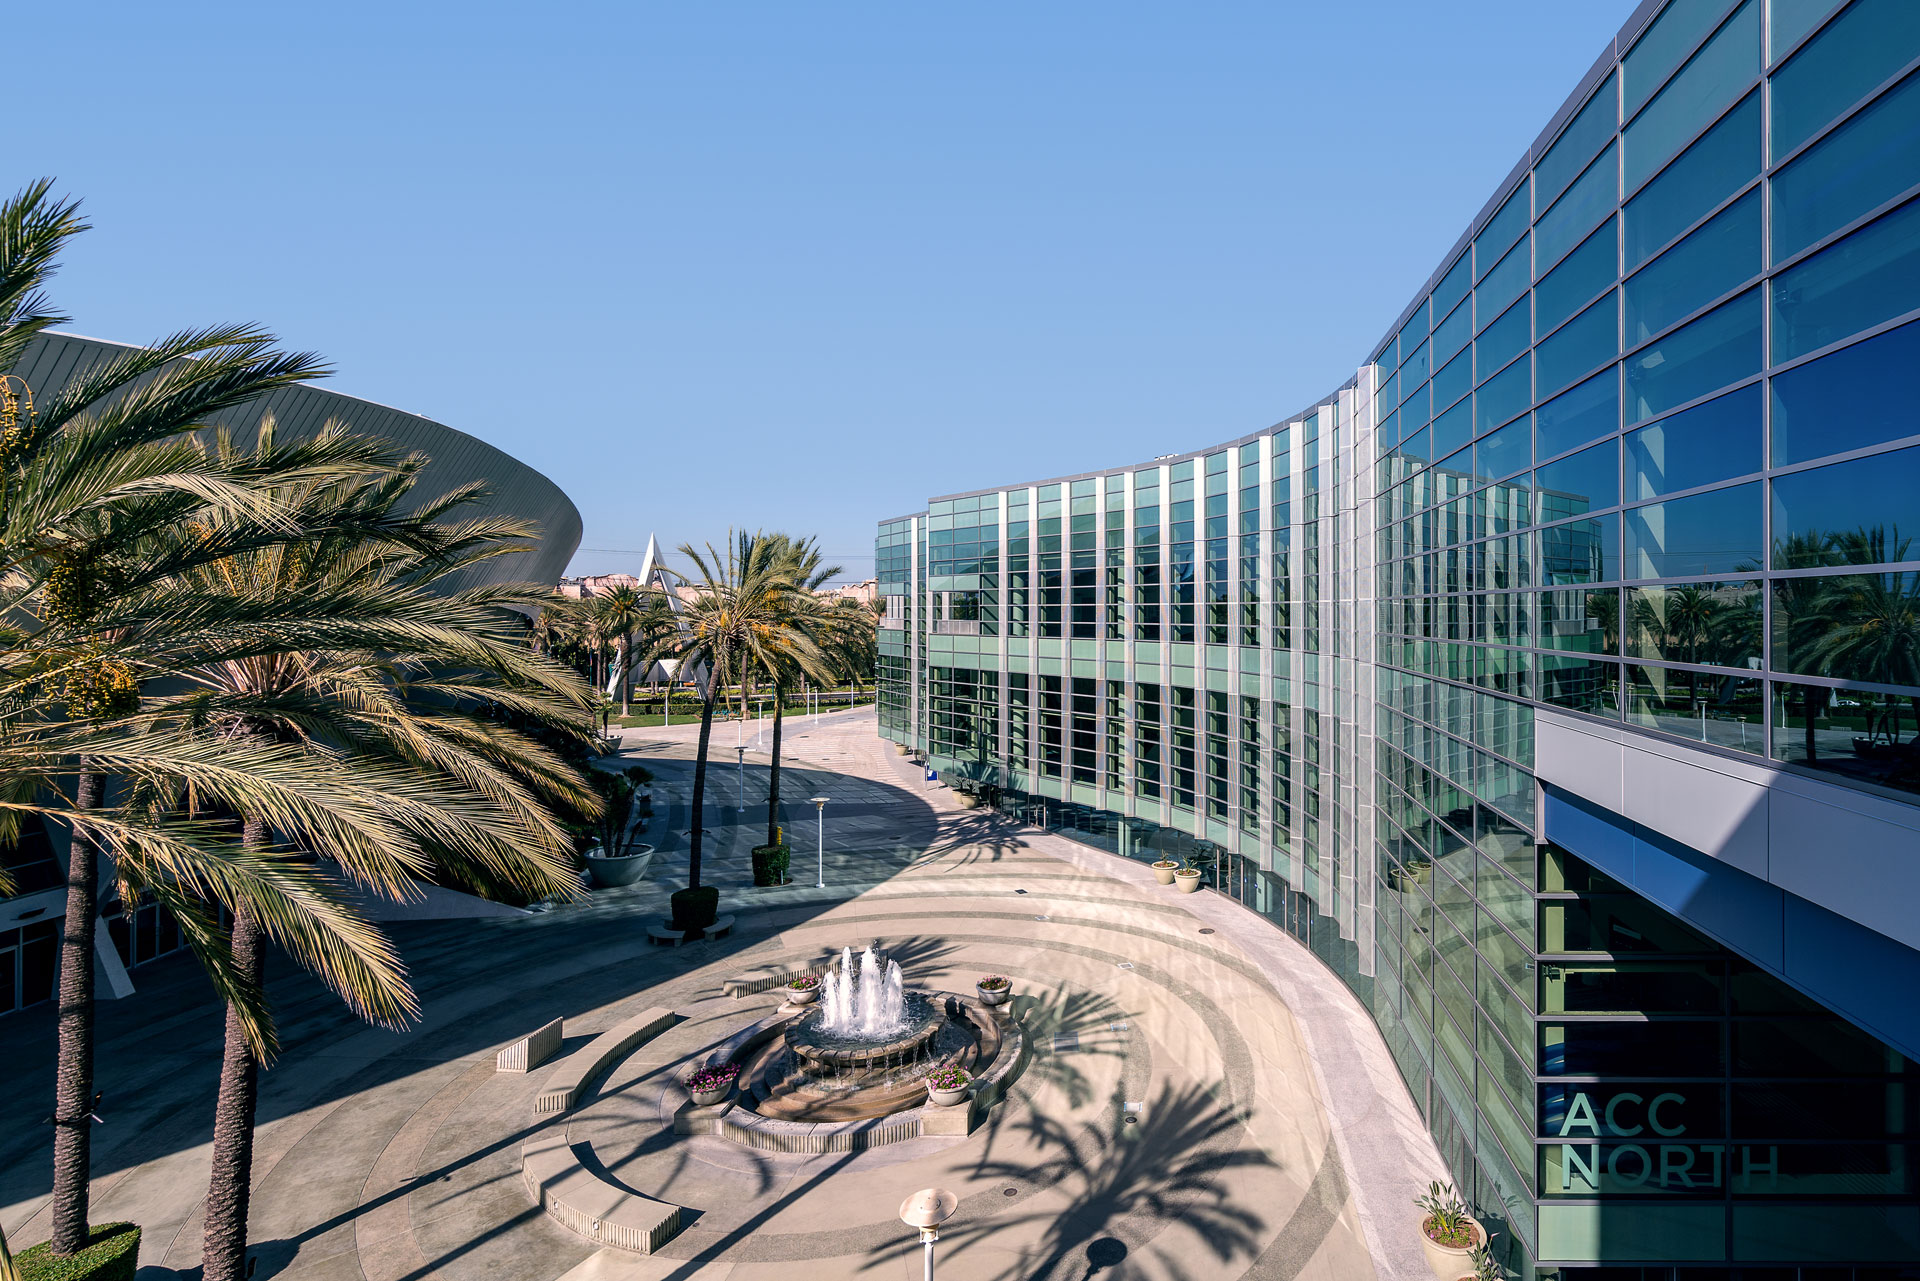 The Anaheim Convention Center